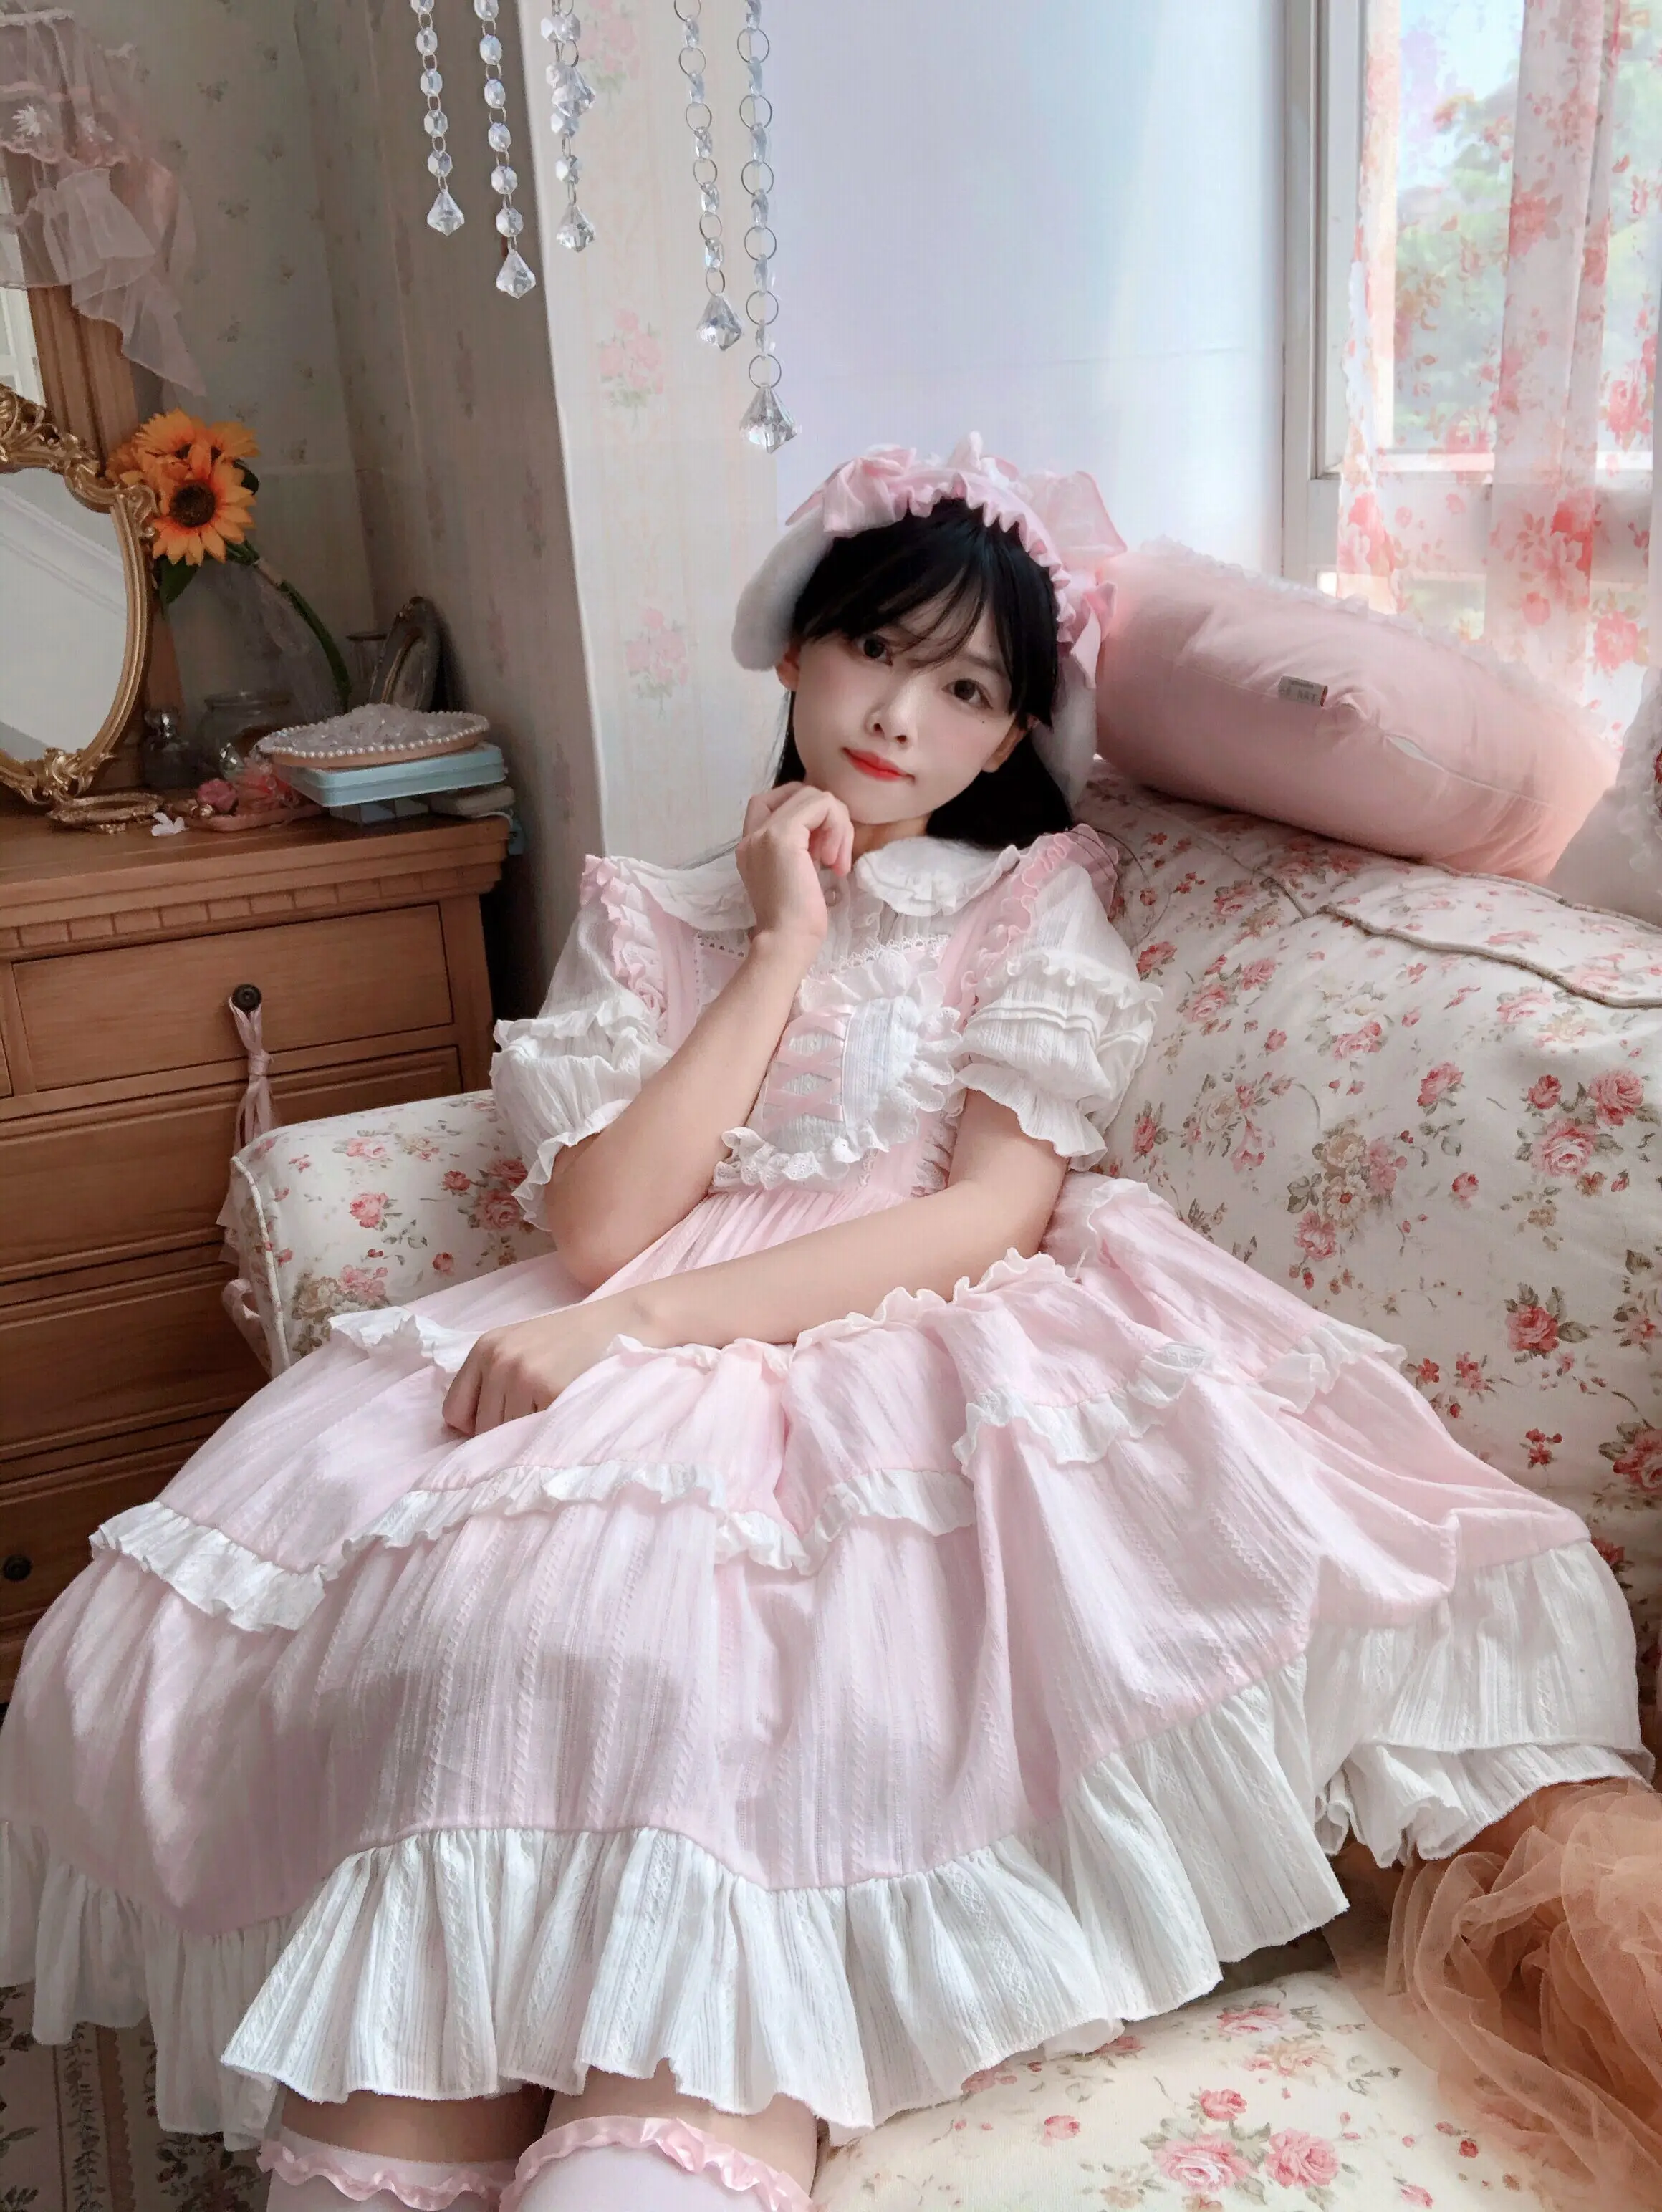 Girl's Lolita Princess Dress Long Sleeve Cake Dress Pink Princess